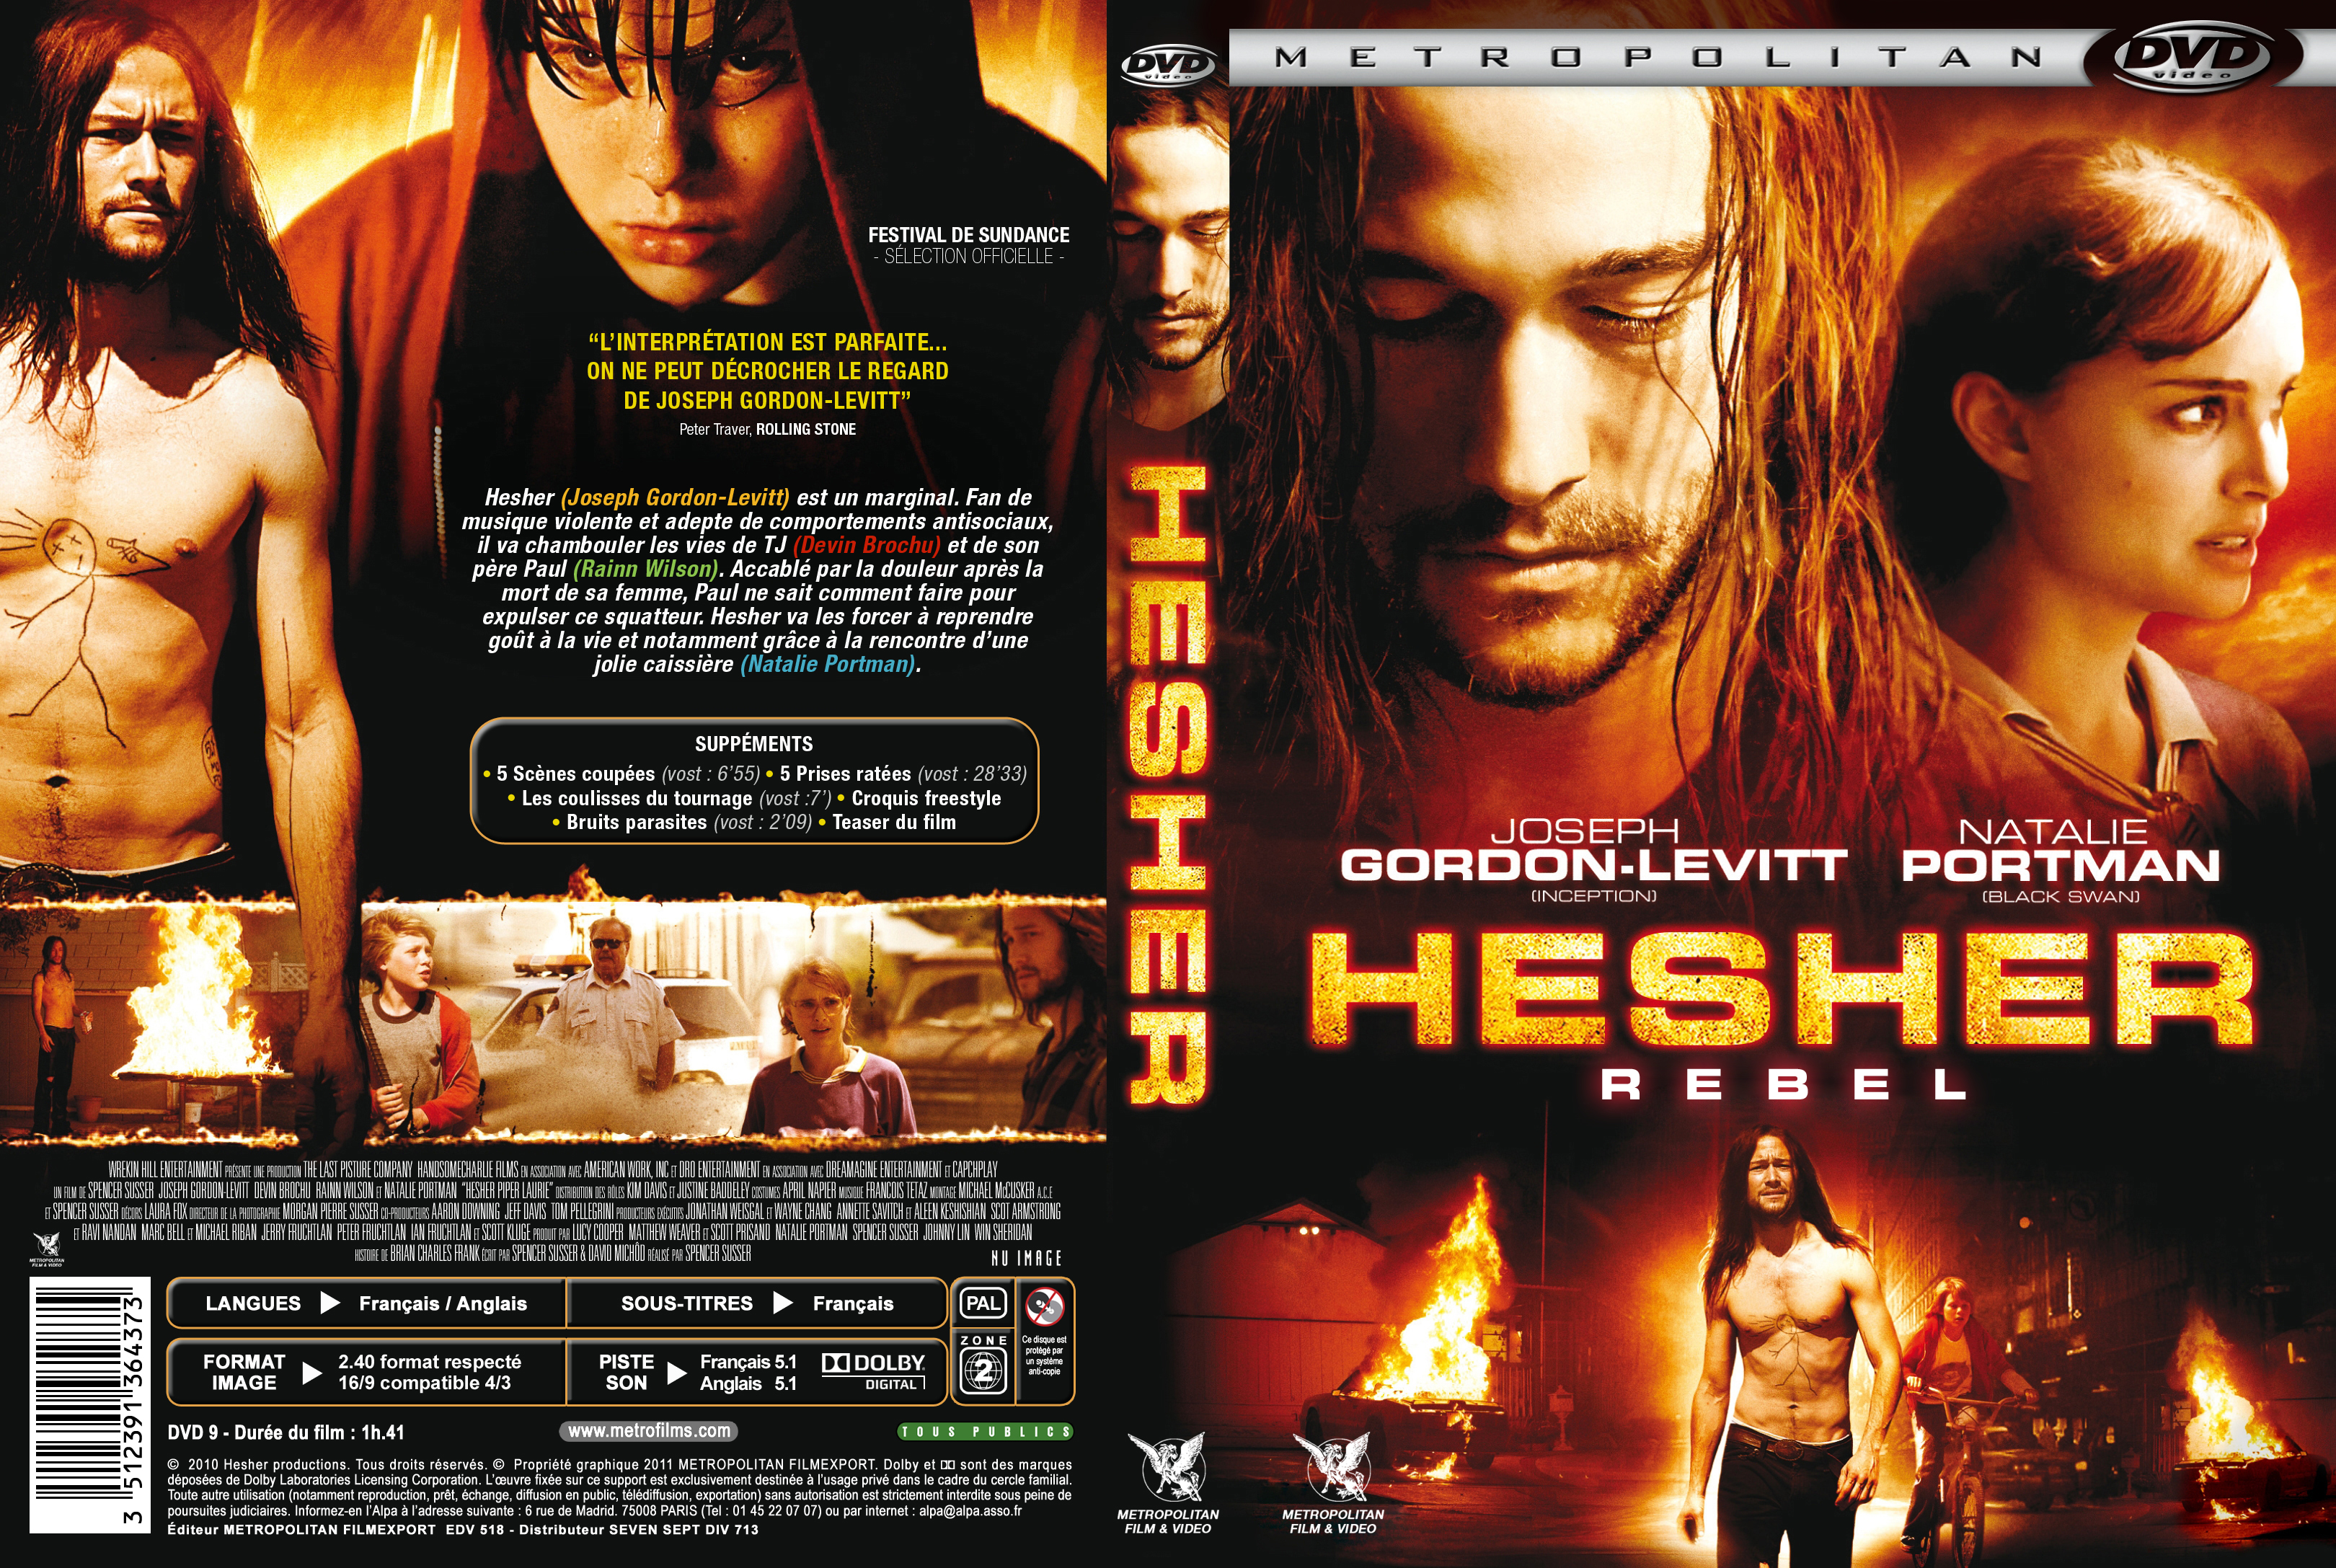 Jaquette DVD Hesher custom